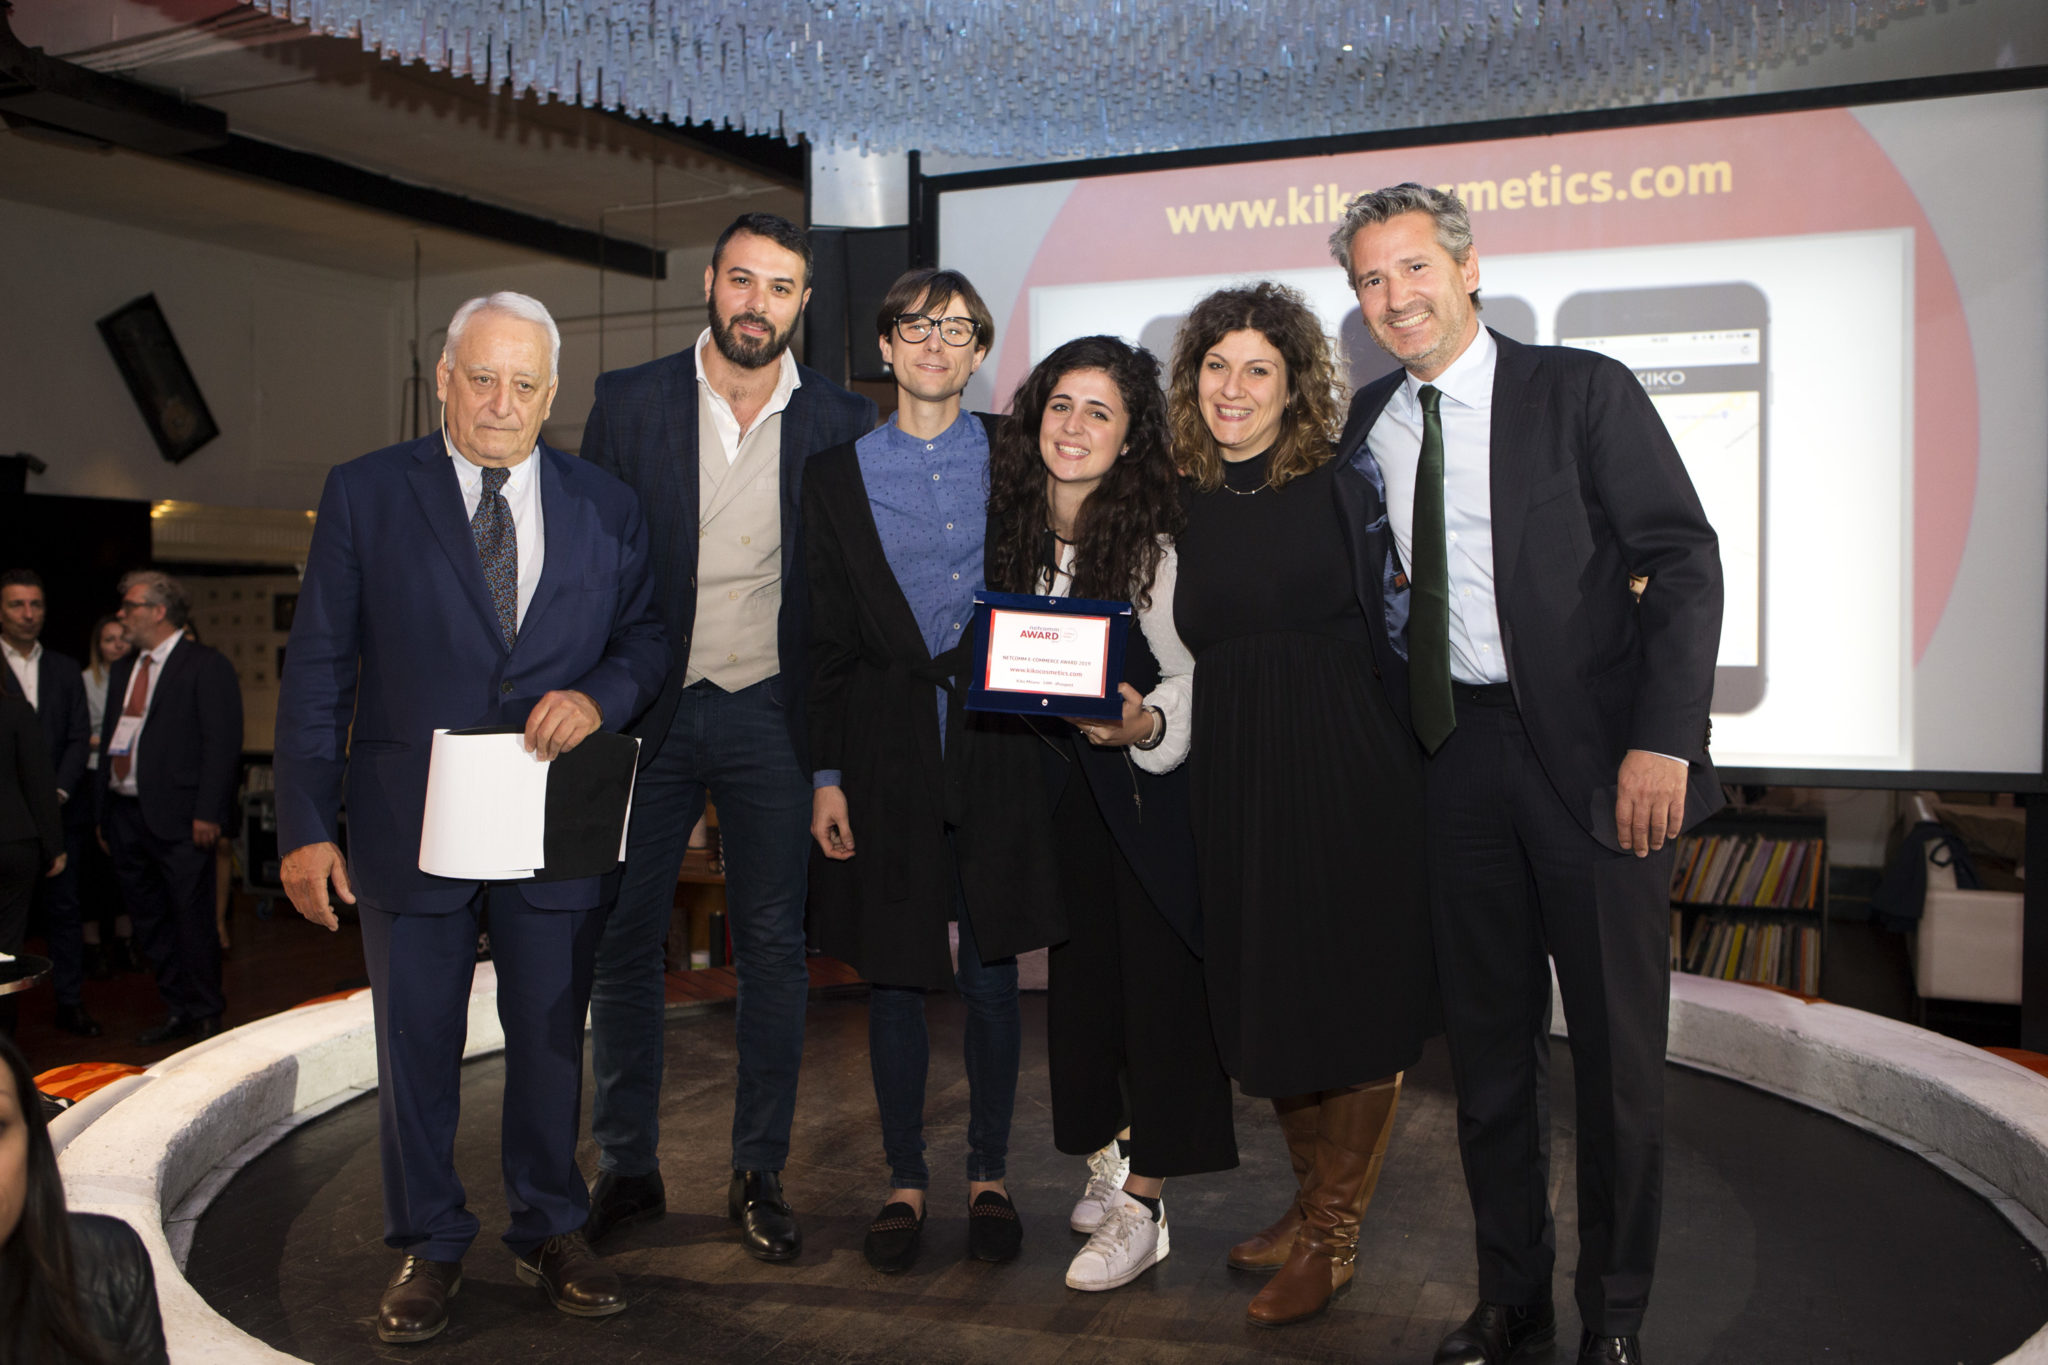 Kiko Milano vince il Best Netcomm e-Commerce Award 2019 e ottiene il premio nella categoria beauty